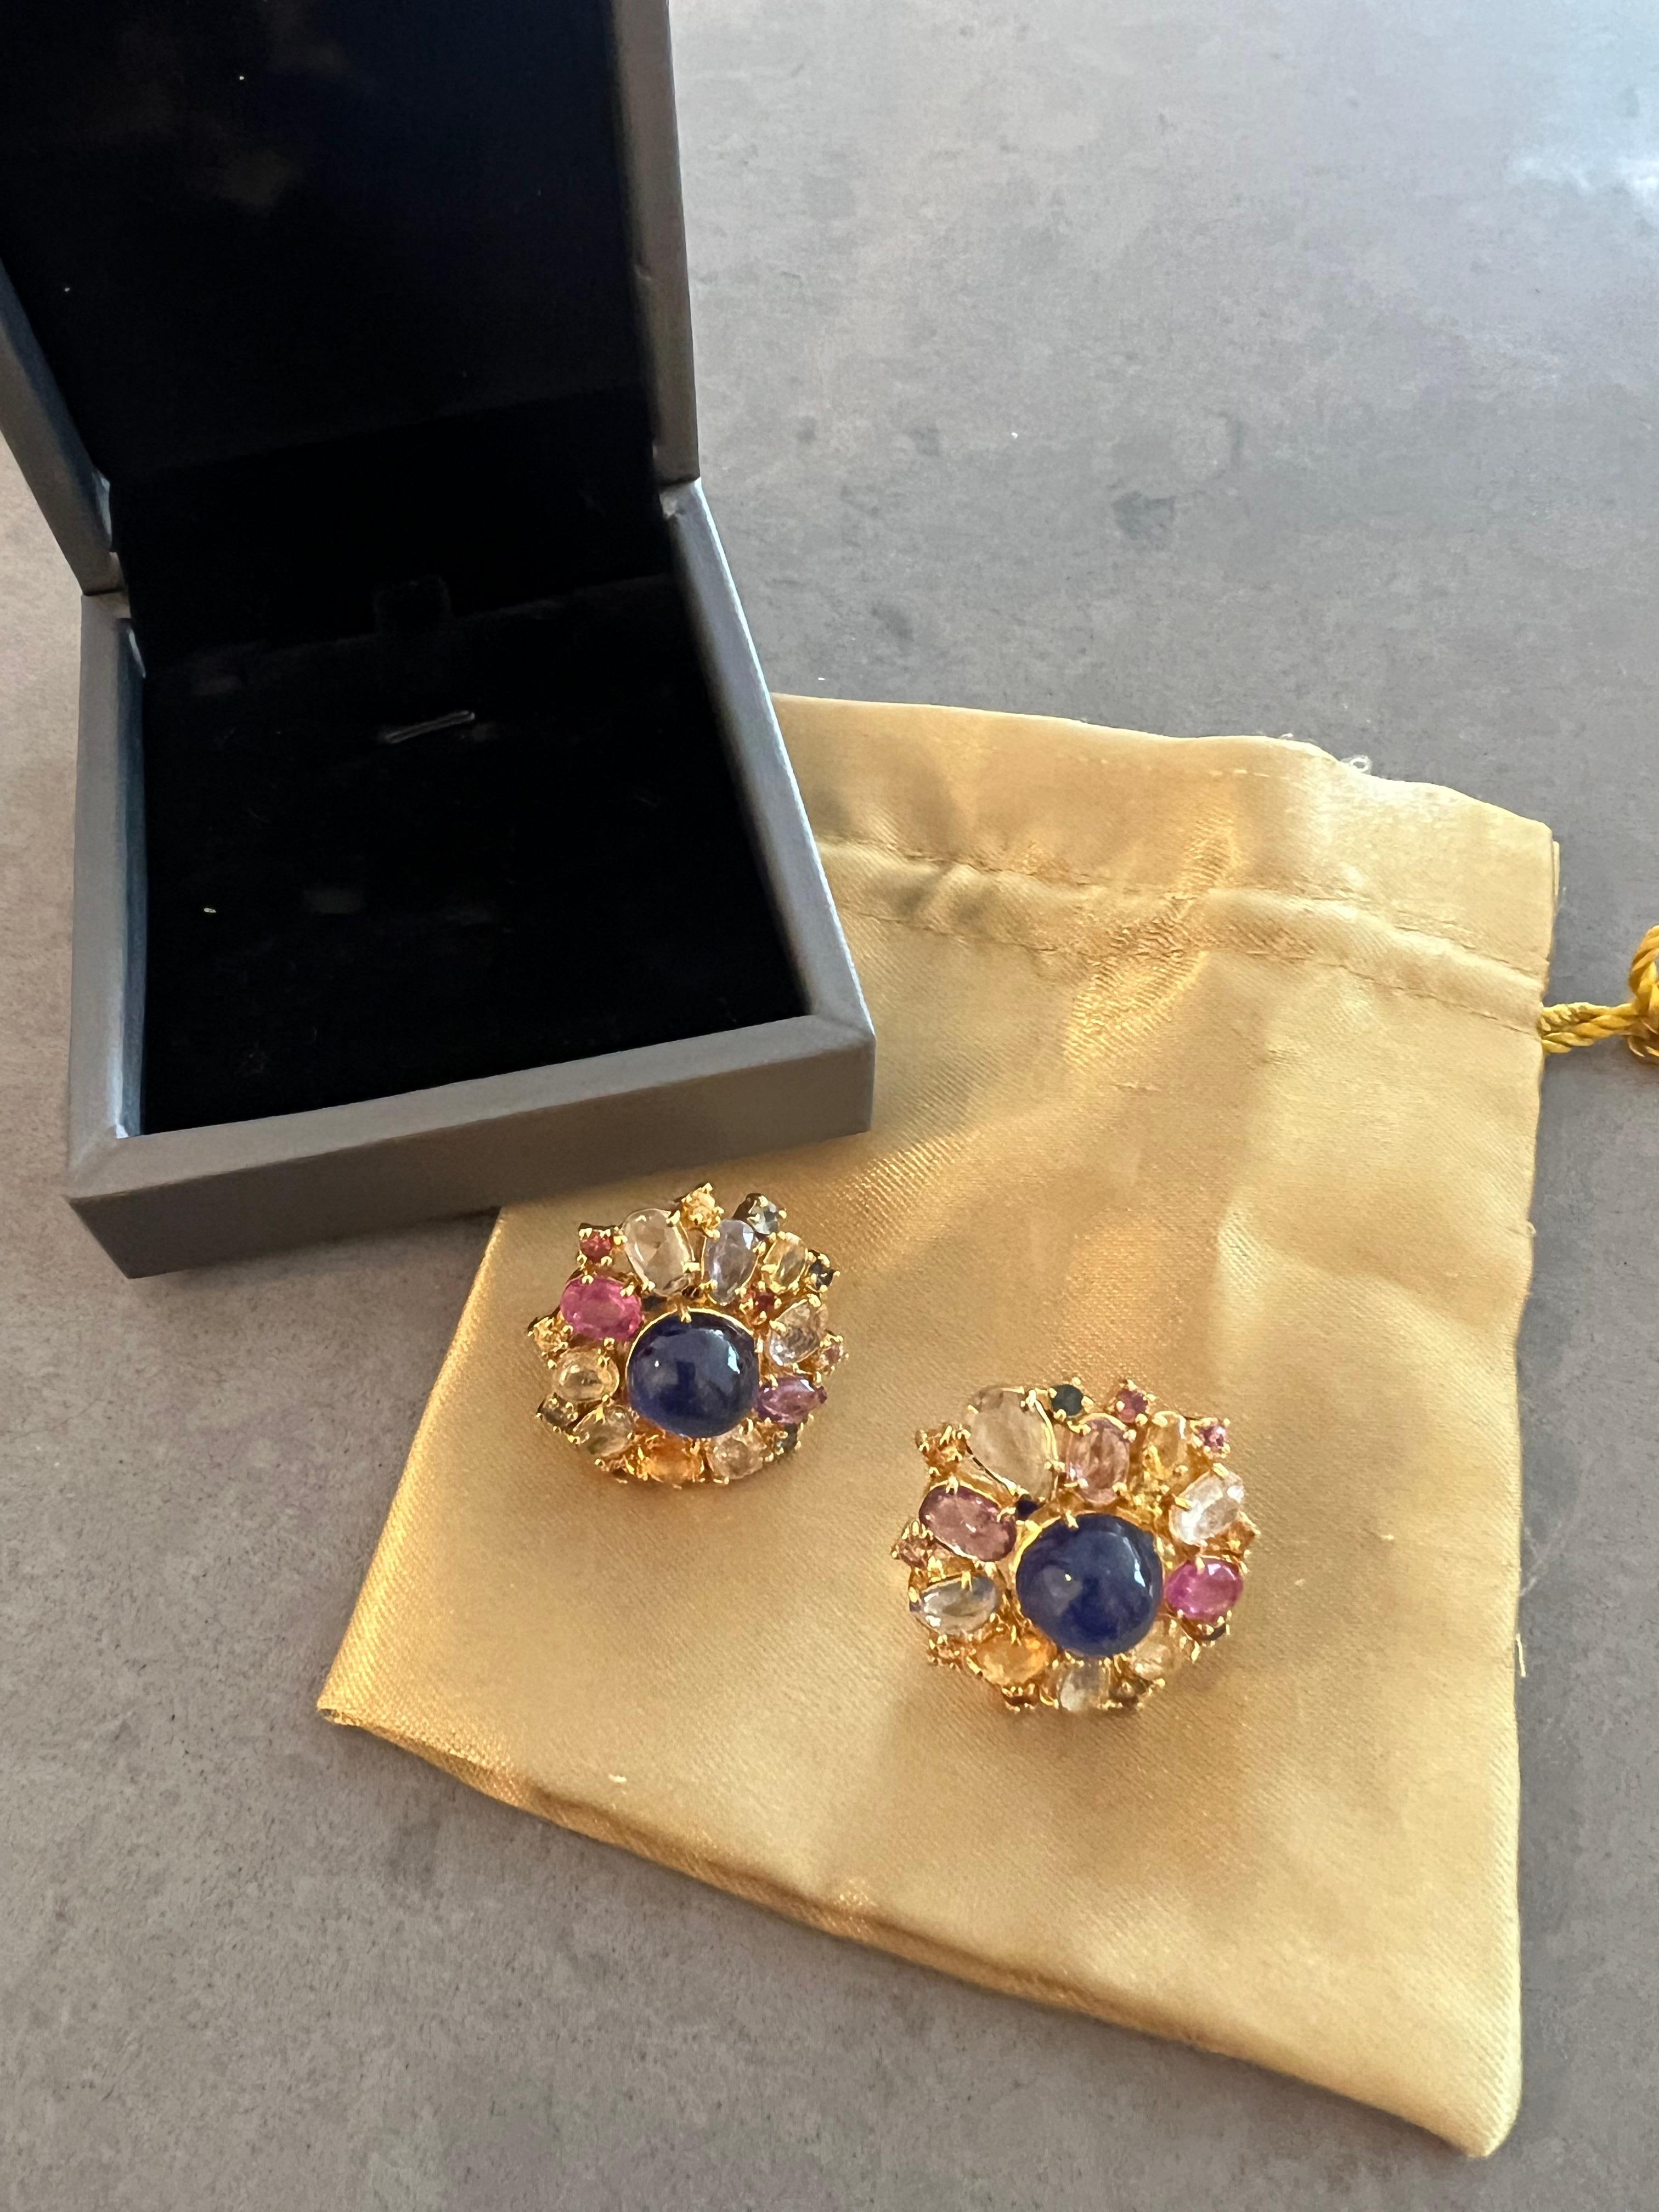 Bochic “Capri” Ruby & Rose Cut Sapphire Earrings Set in 18k Gold & Silver For Sale 4